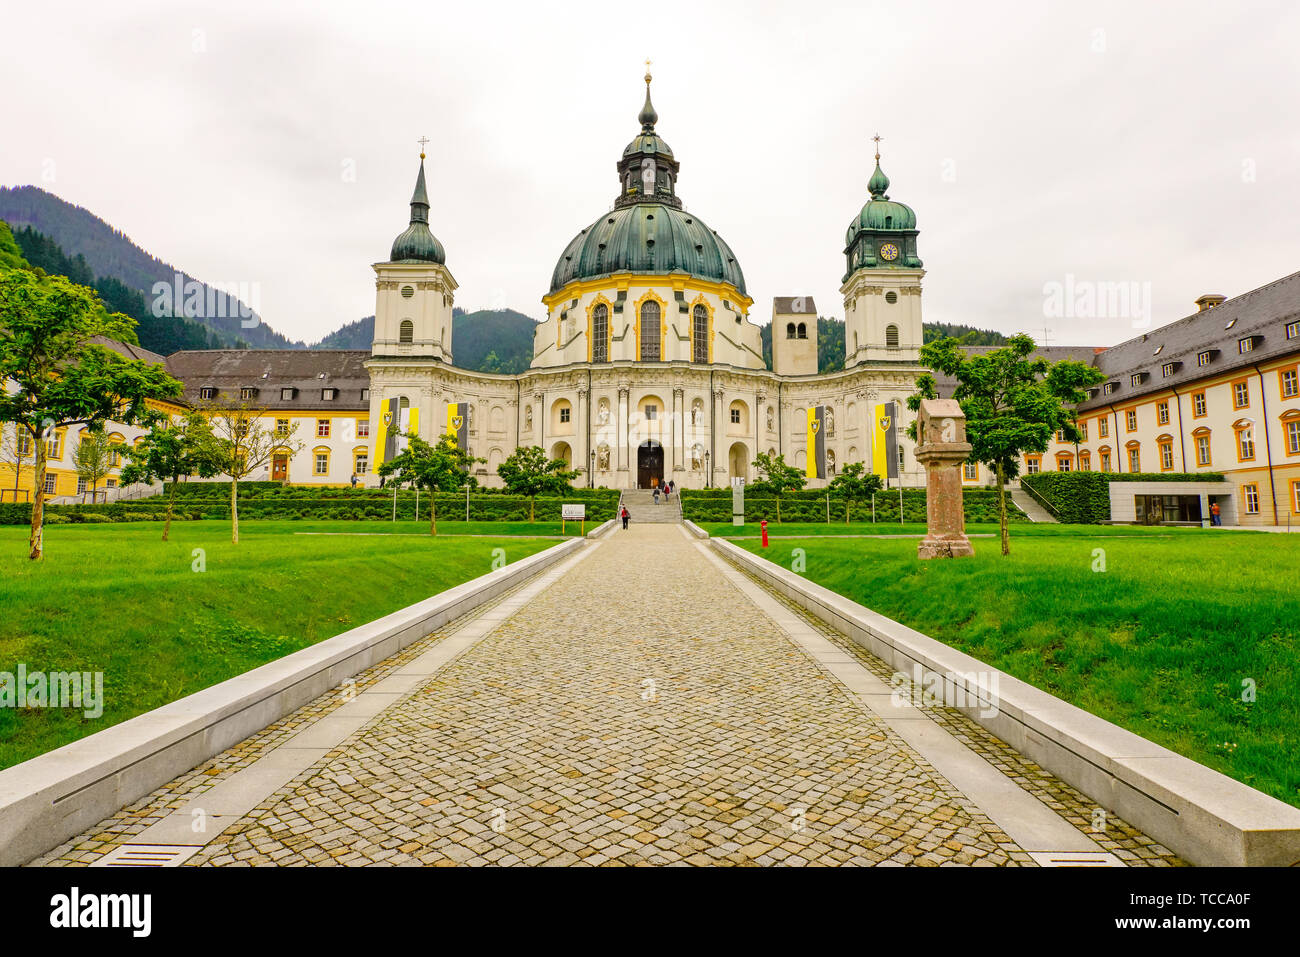 Vorderansicht des barocken Benediktiner Kloster Ettal, Bayern, Deutschland. Stockfoto